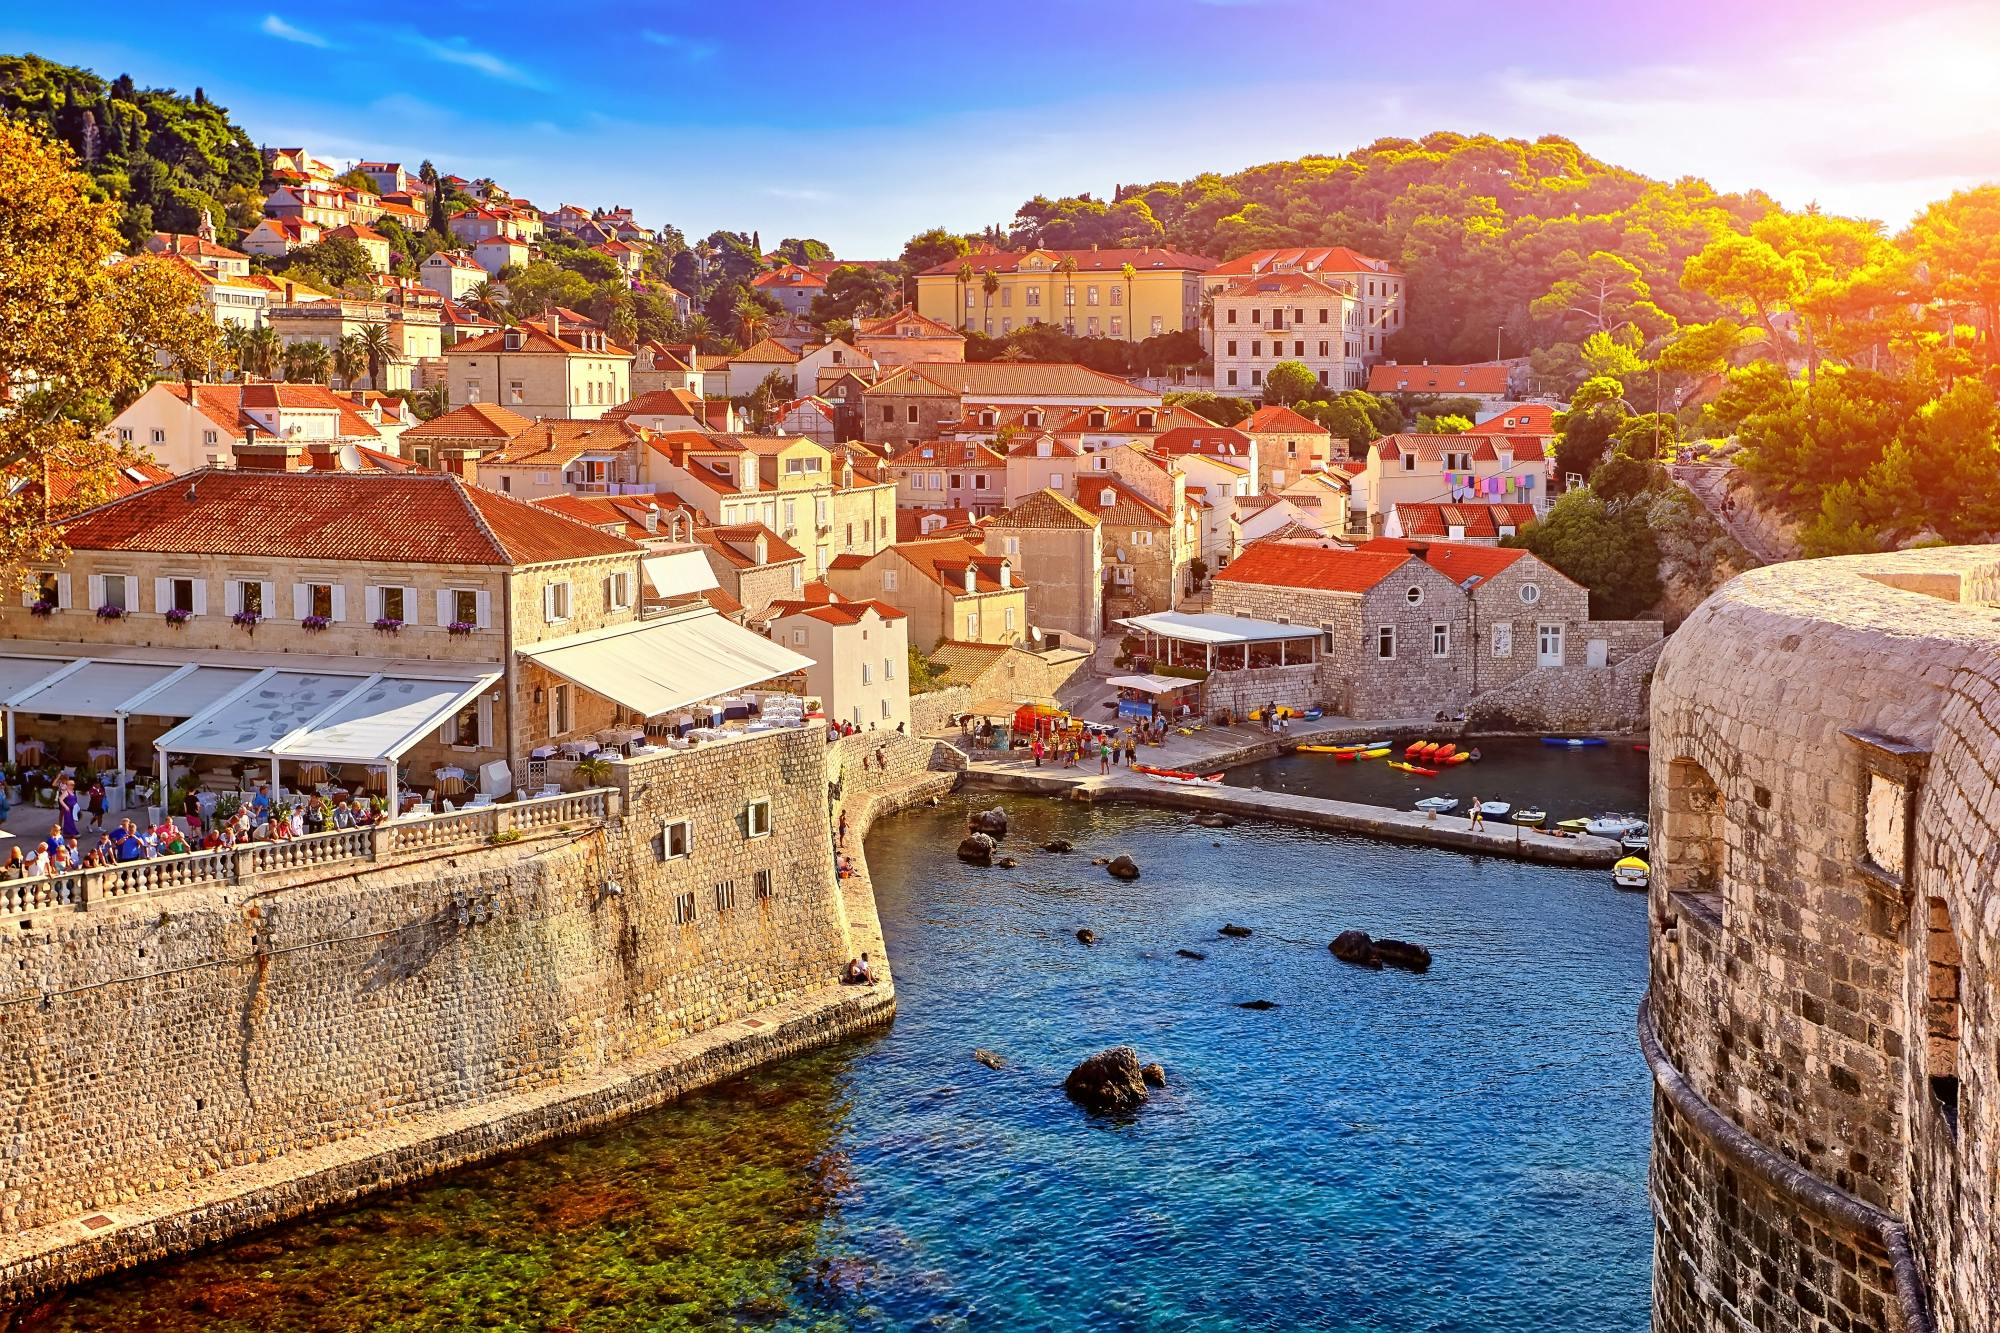 Excursão de dia inteiro em Dubrovnik saindo de Trogir